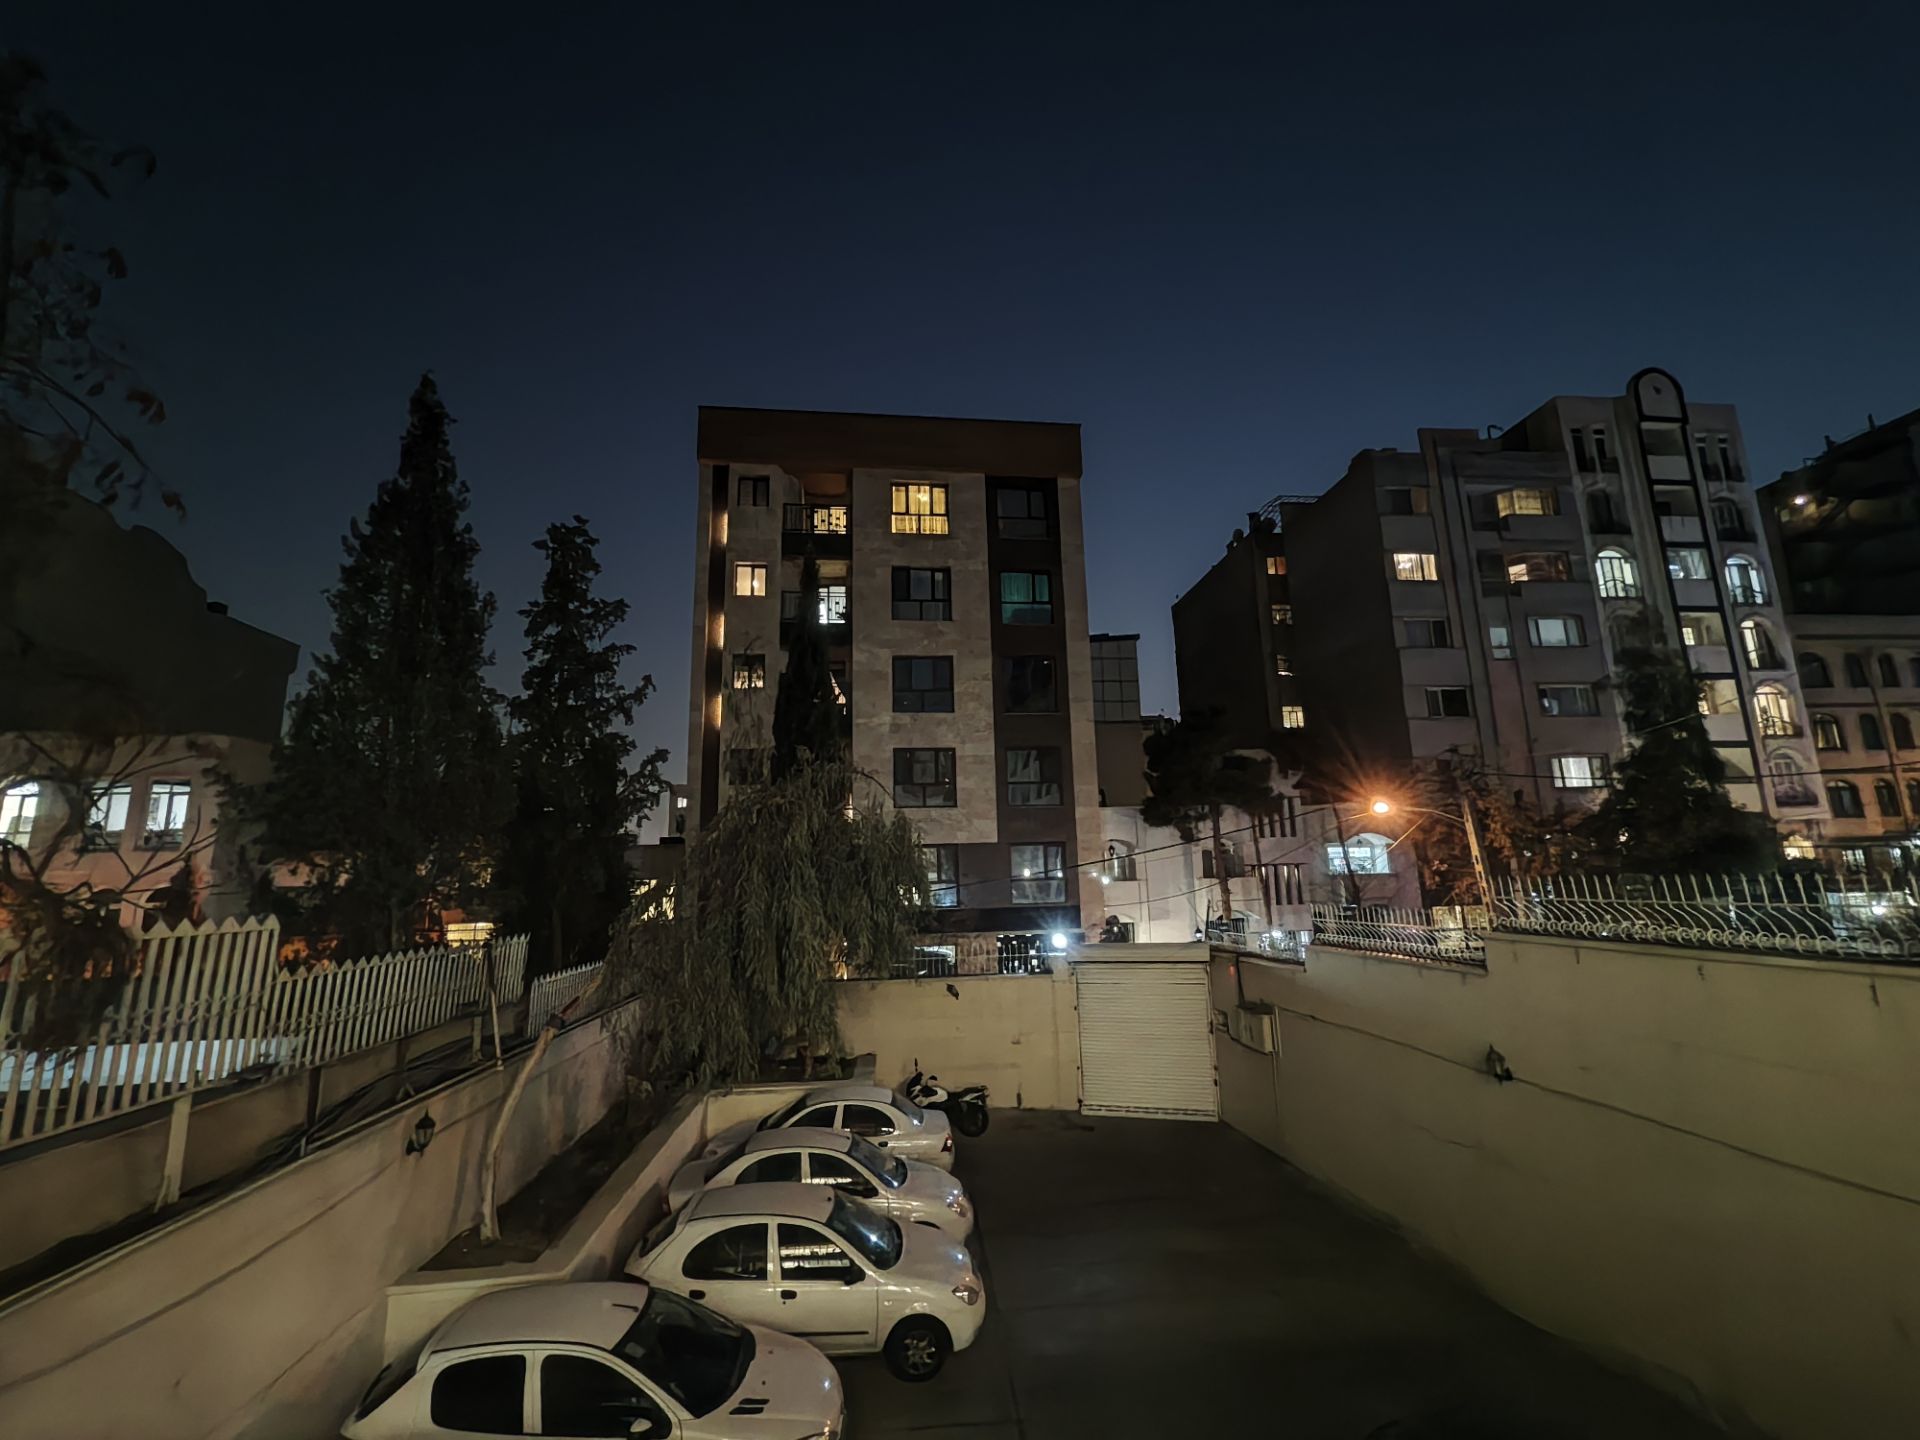 نمای ساختمان با فاصله زیاد در شب